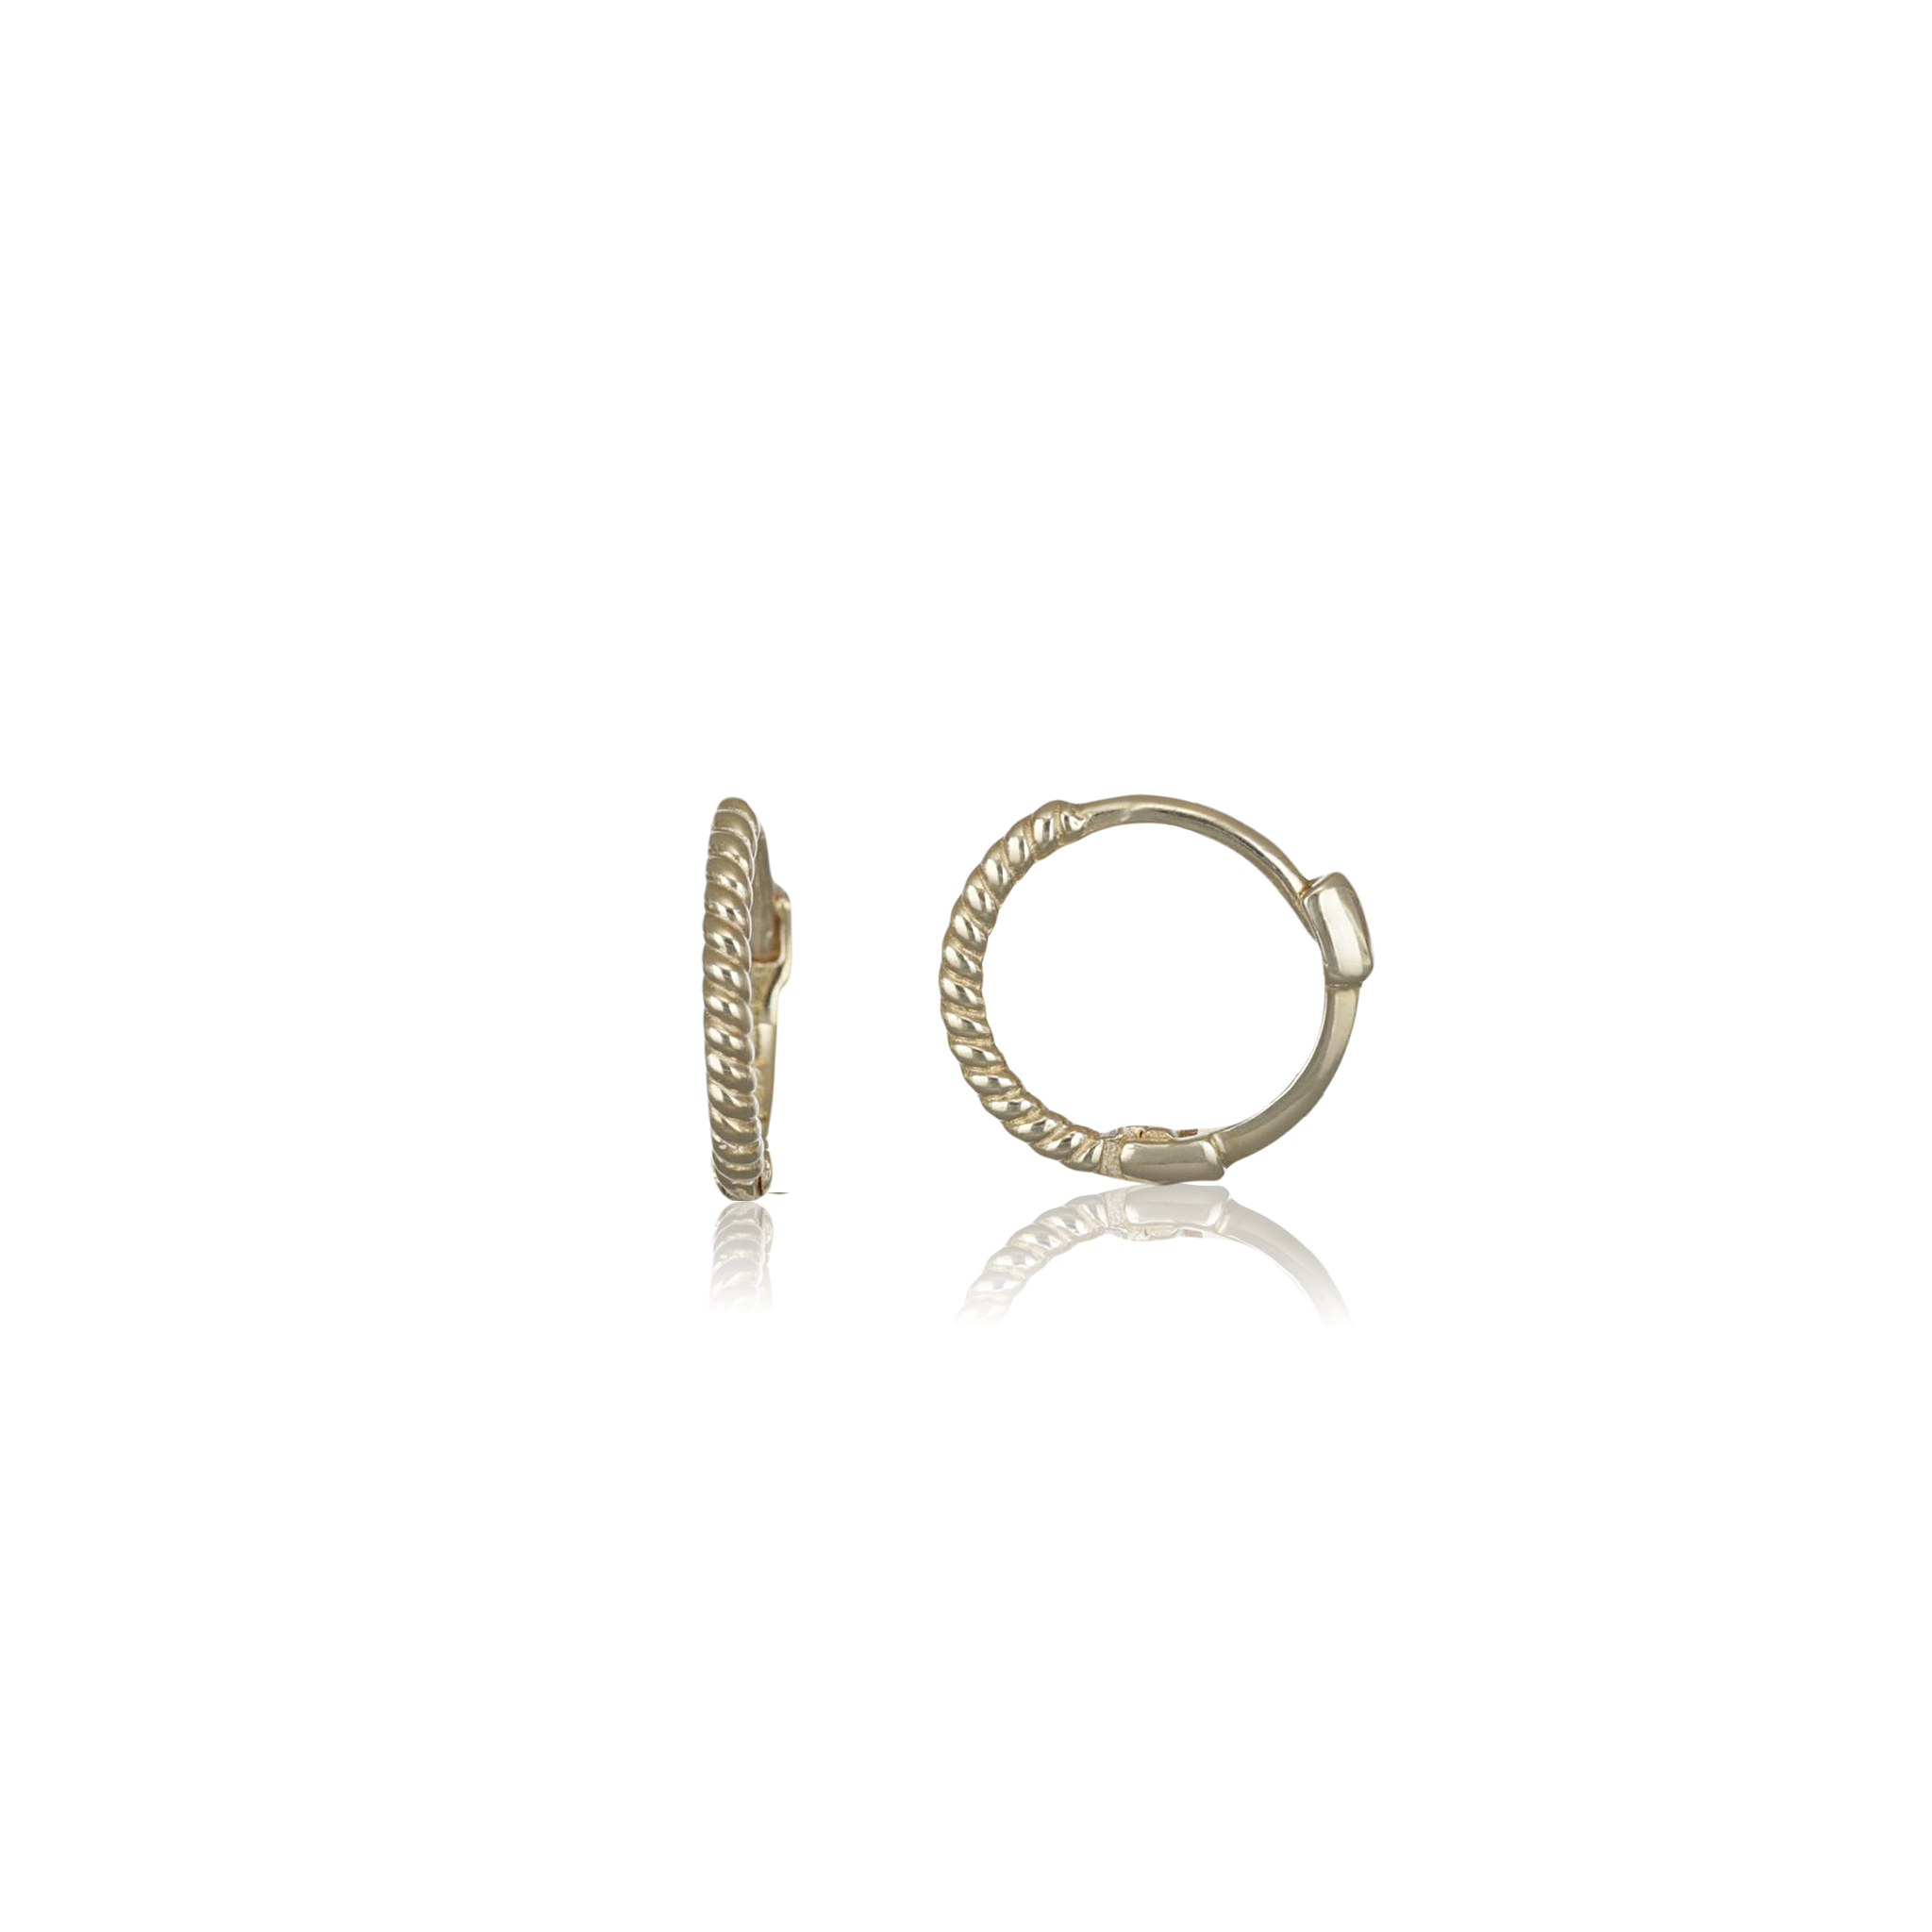 Huggie Earrings, 14K Gold Hoop Earrings, Mini Small Hoop 14K Gold / 7.5mm